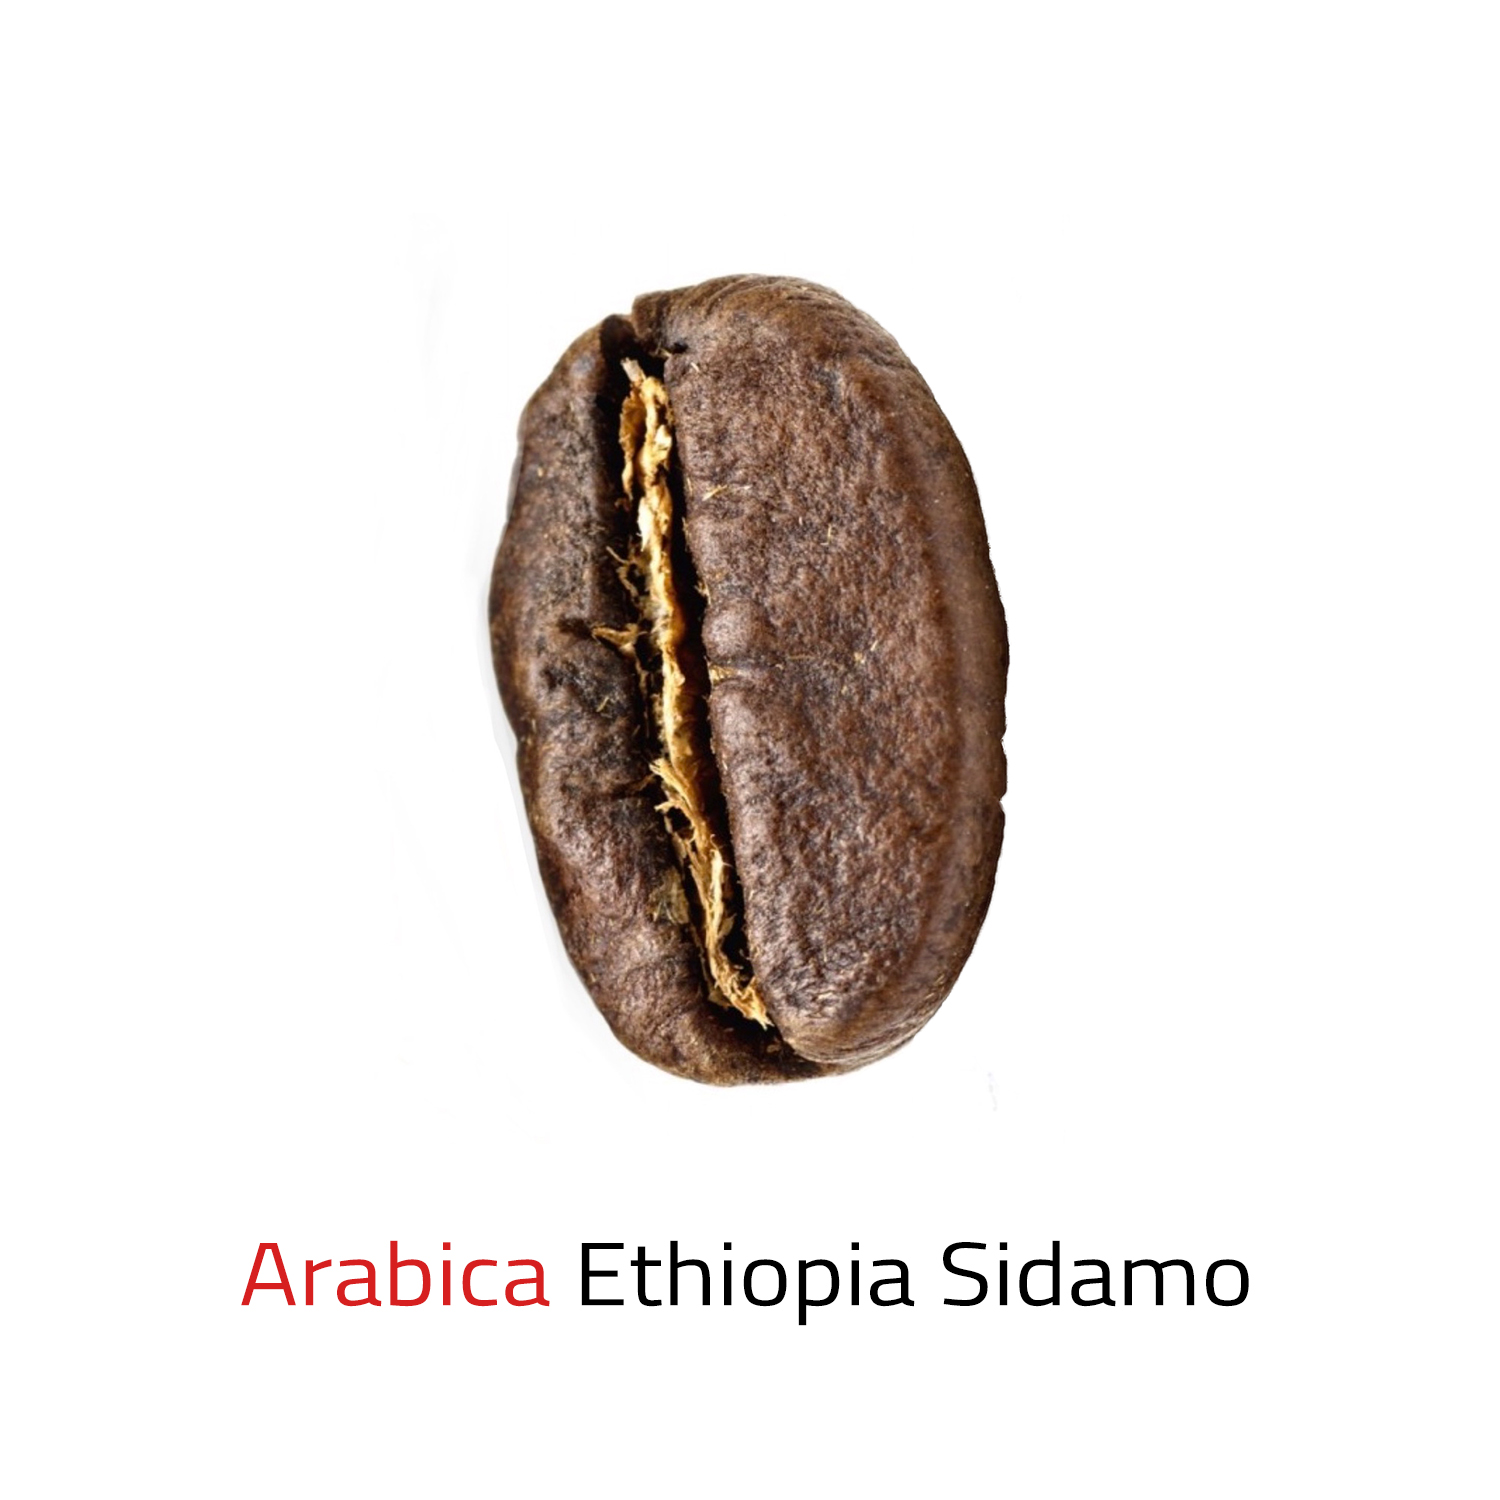 Čerstvě pražená káva zrnková Arabica Ethiopia Sidamo